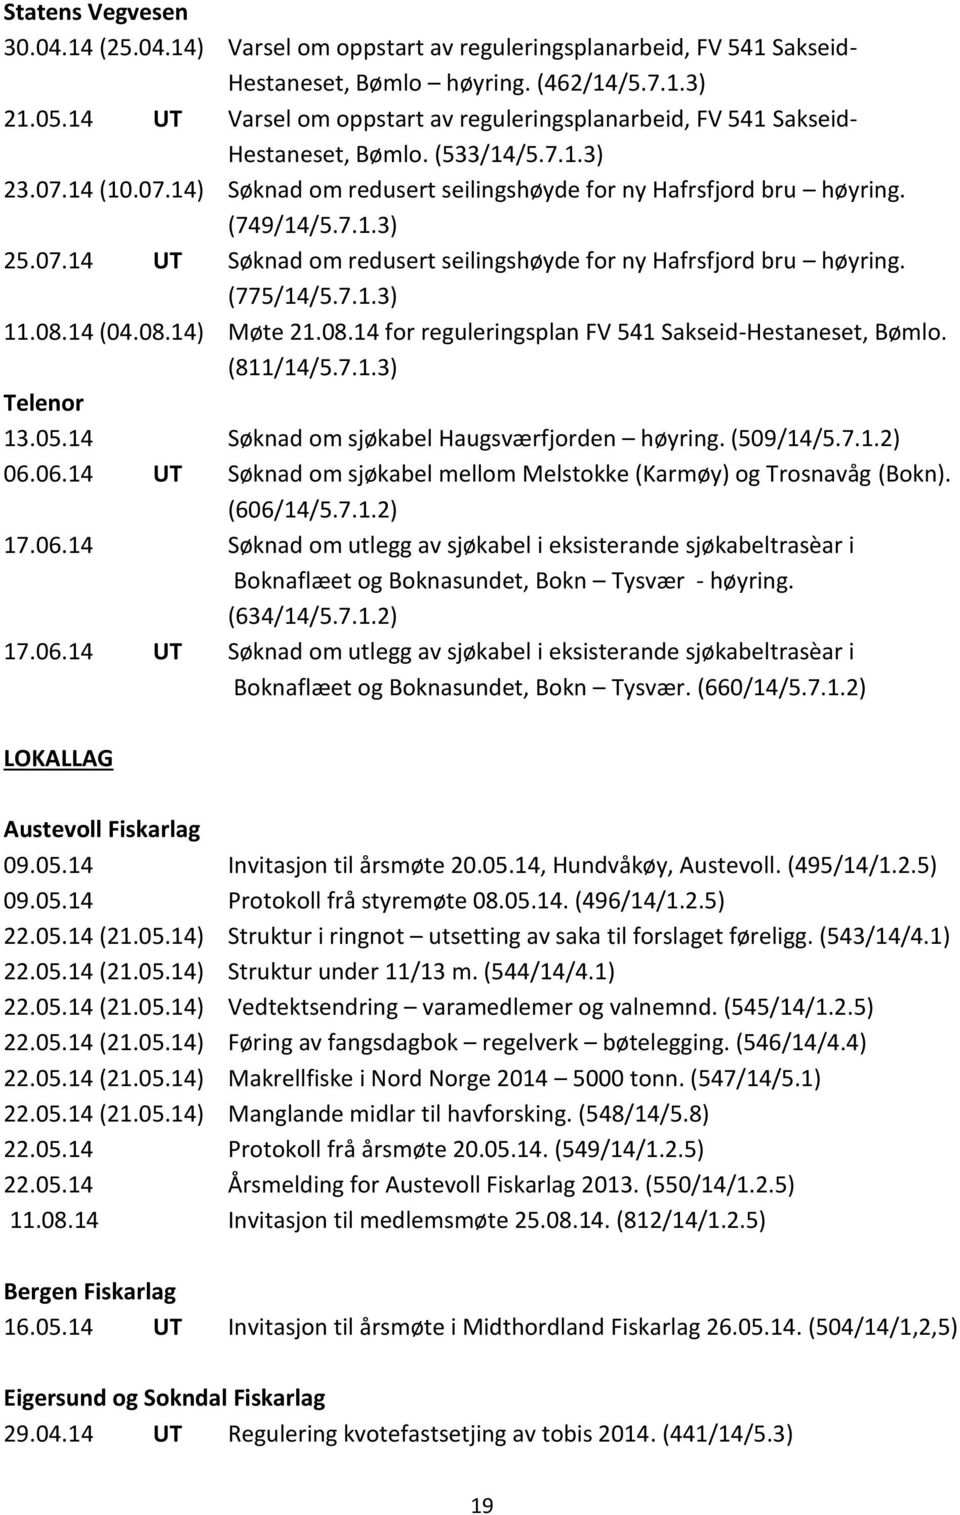 07.14 UT Søknad om redusert seilingshøyde for ny Hafrsfjord bru høyring. (775/14/5.7.1.3) 11.08.14 (04.08.14) Møte 21.08.14 for reguleringsplan FV 541 Sakseid-Hestaneset, Bømlo. (811/14/5.7.1.3) Telenor 13.